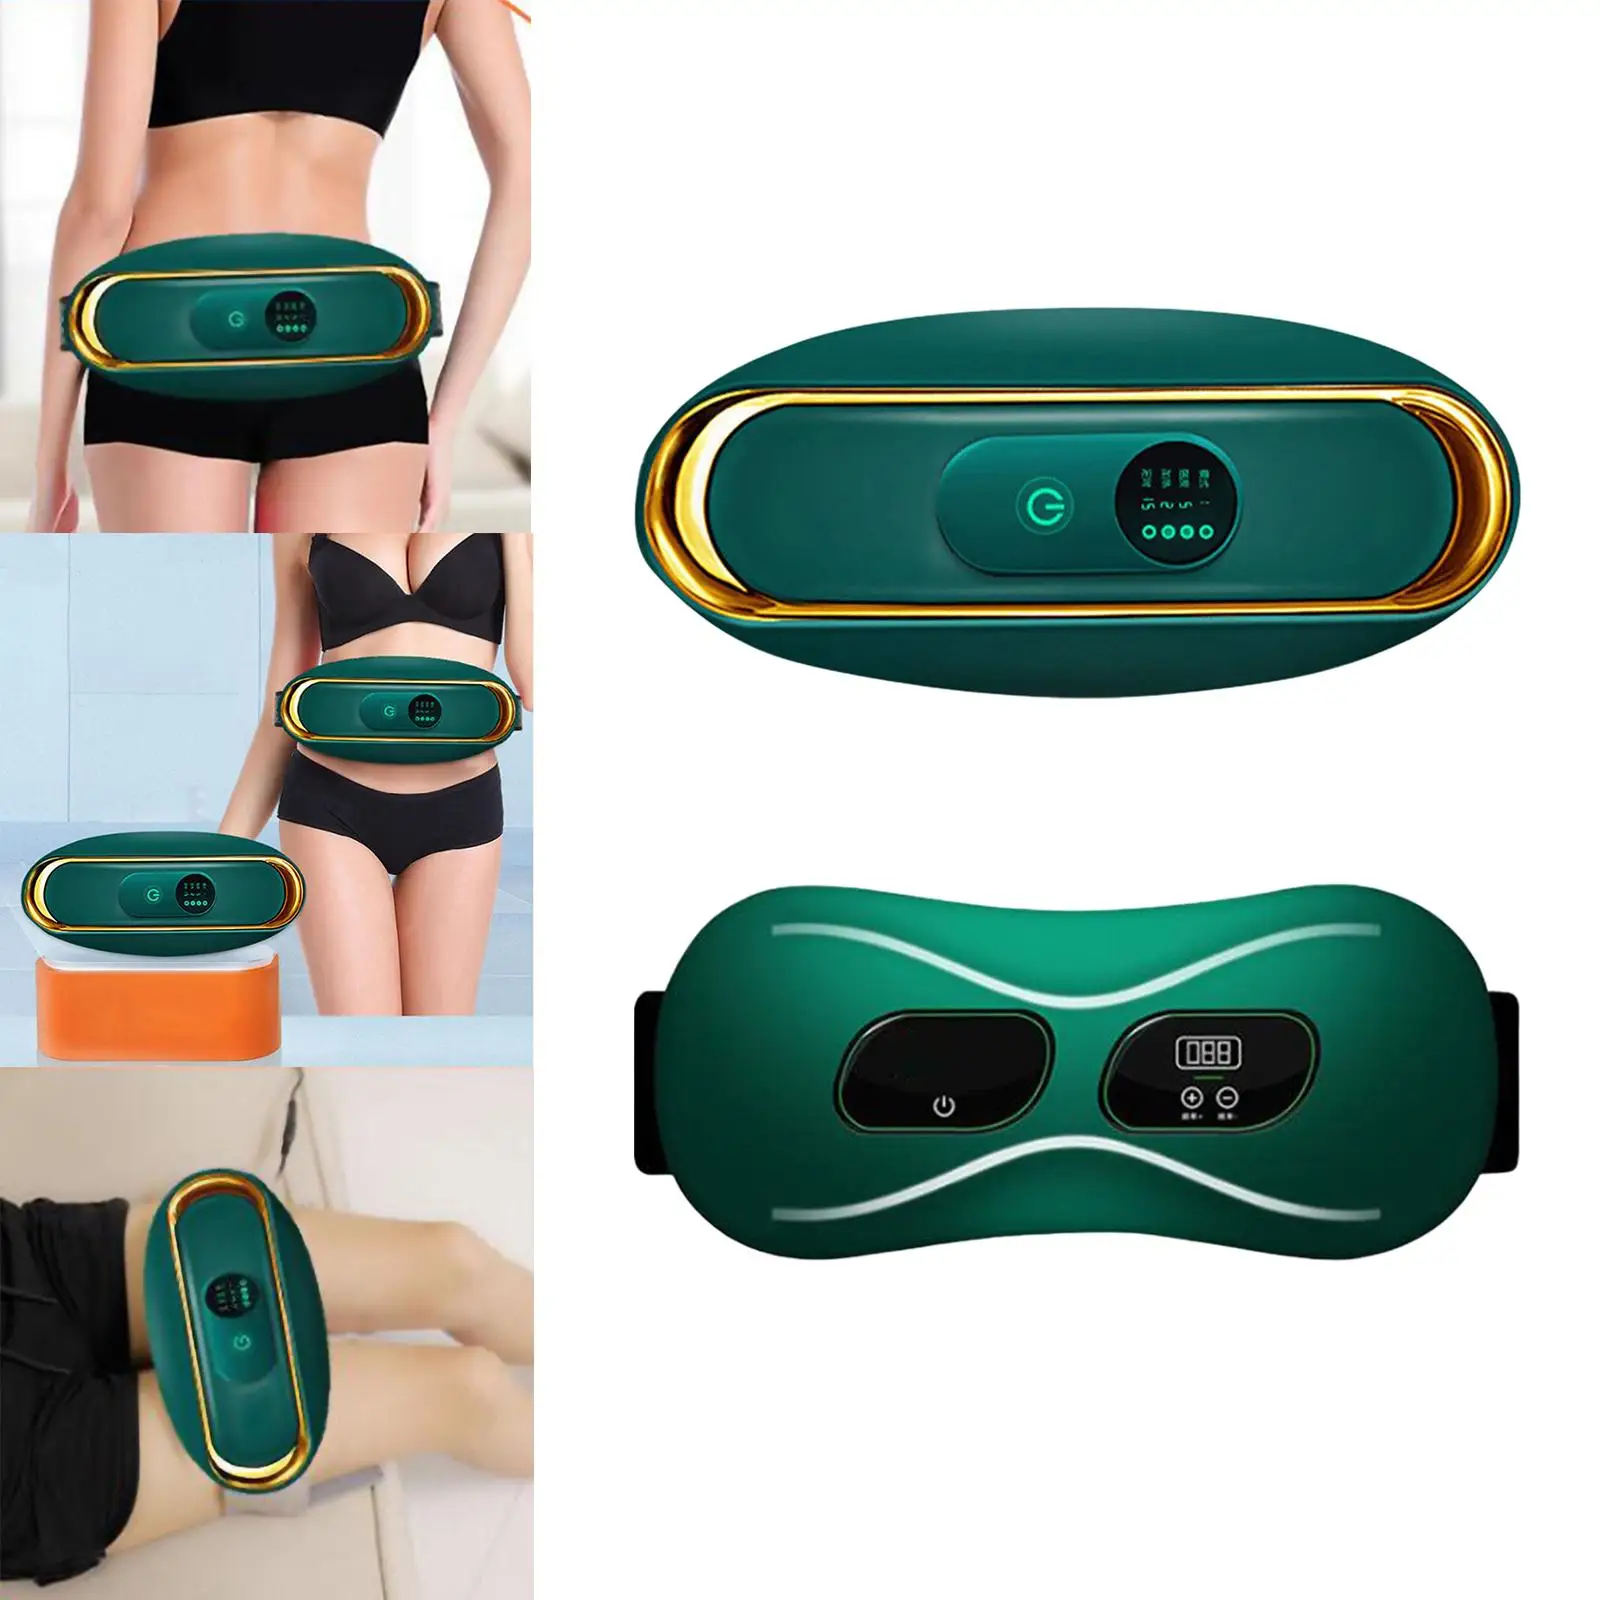 Slimming Belt Portable Promote Digestion Vibration Massage Adjustable Waist Trainer Stimulator for Office Travel Home Men Women